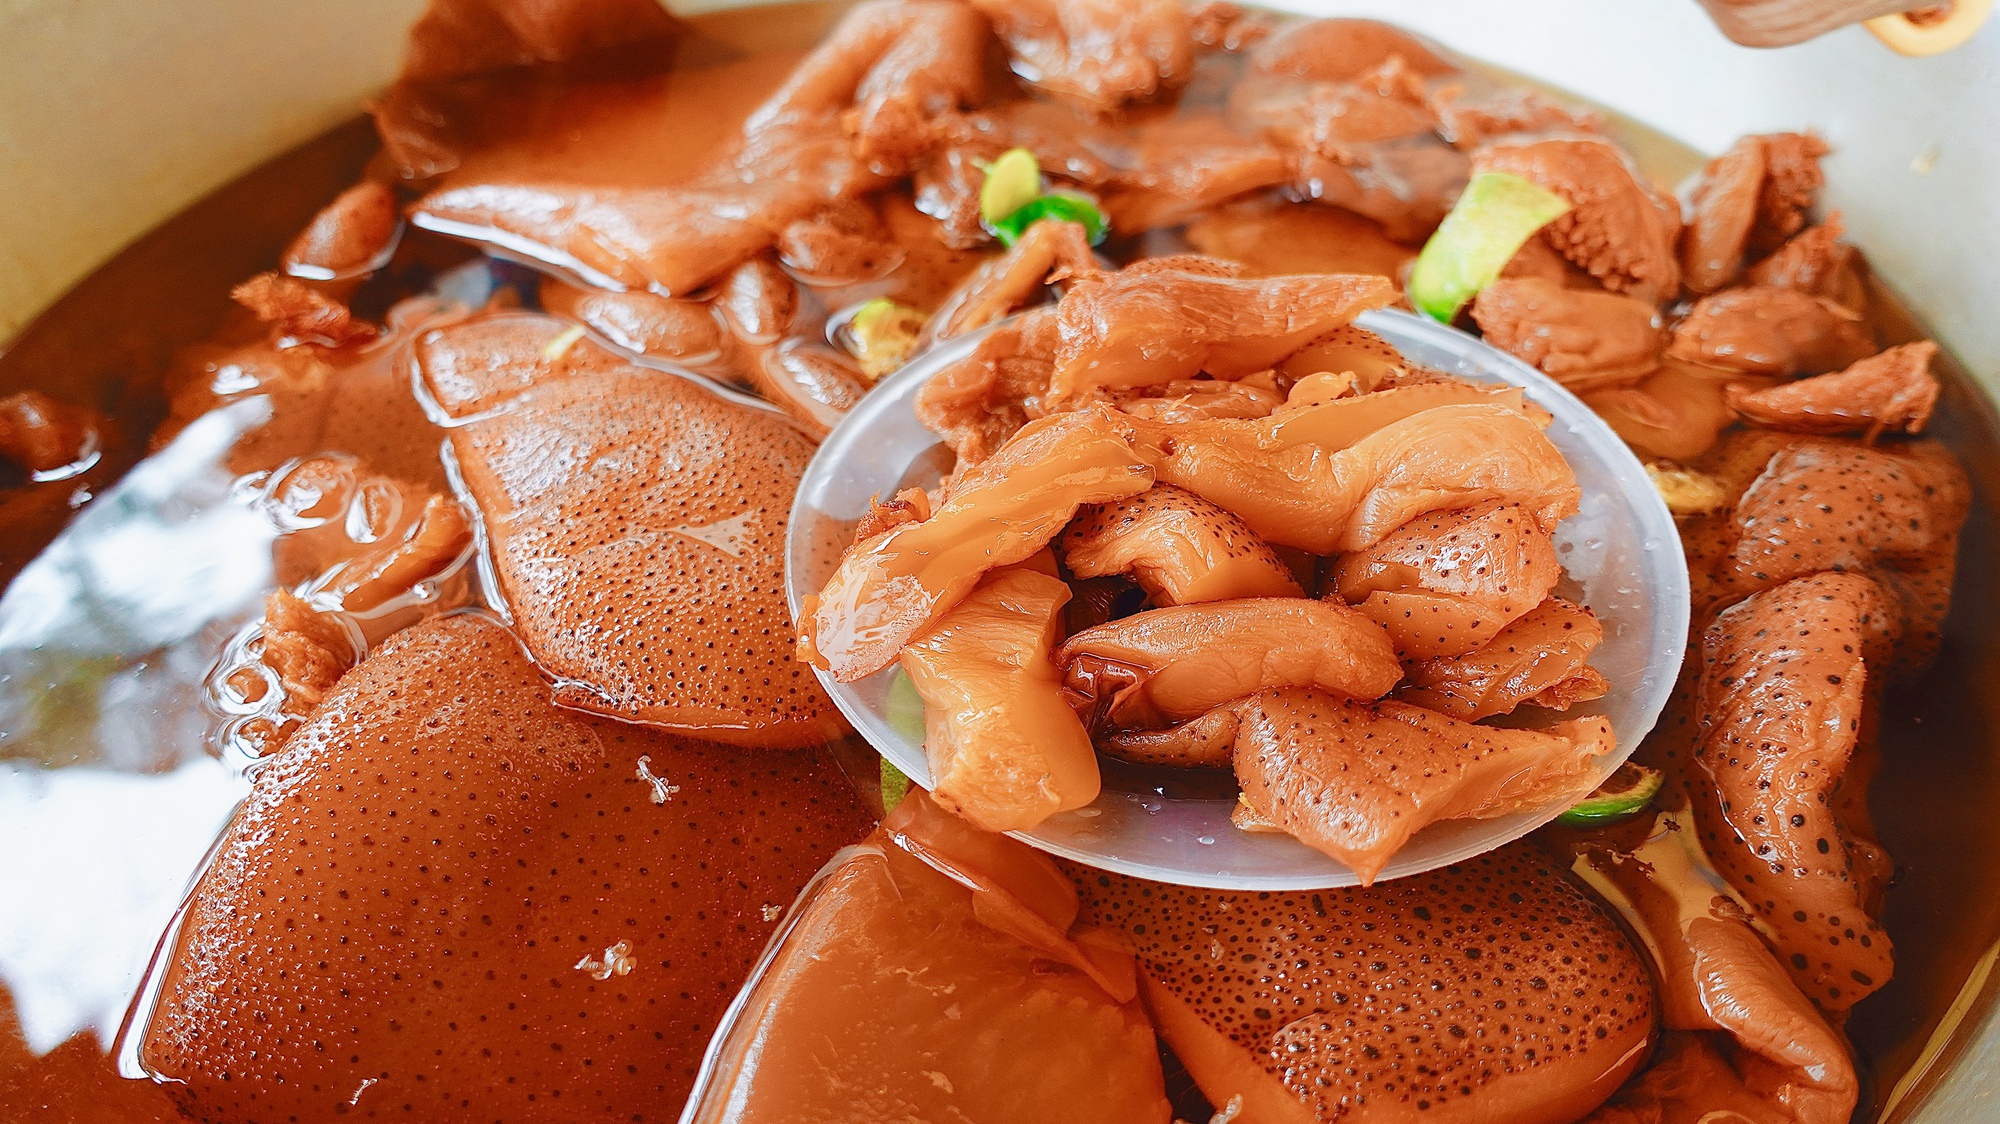 Sống ở Hà Nội bao năm nhưng nhiều người vẫn chưa từng thử ăn sứa đỏ: Hương vị thế nào mà "cuốn" vậy?